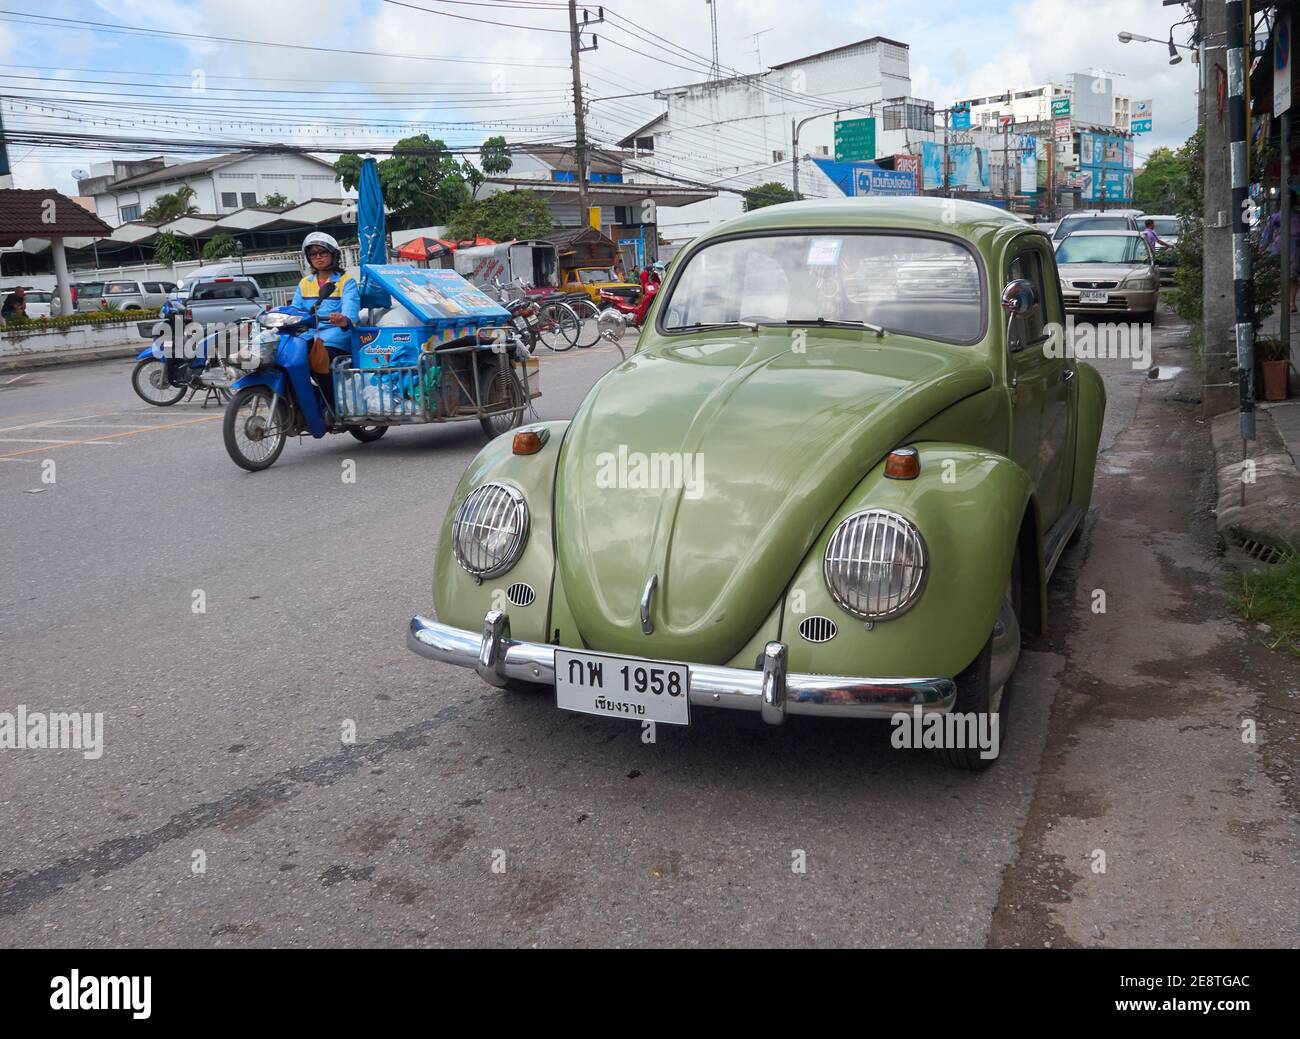 Un scarabeo volkswagen verde è parcheggiato sul lato di la strada sullo sfondo di una moto in marcia Foto Stock